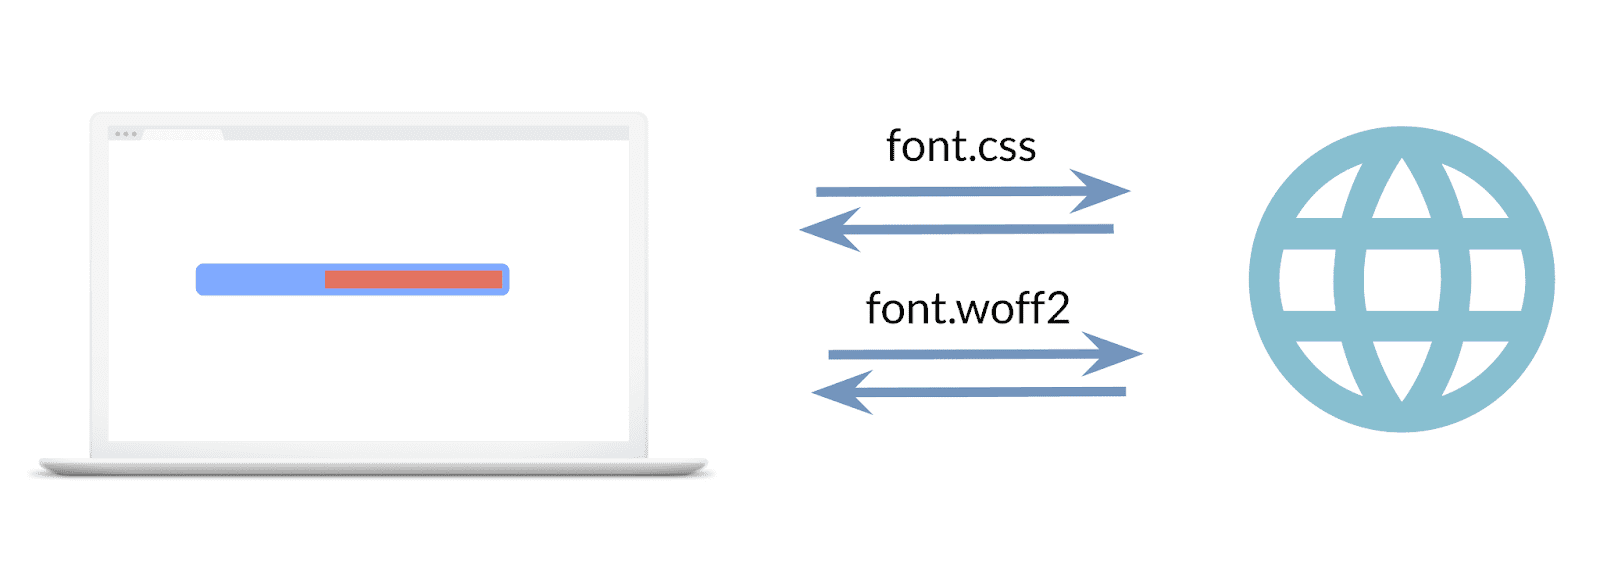 Biri yazı tipi stil sayfası, diğeri yazı tipi dosyası için olmak üzere, yapılan iki isteği gösteren resim.